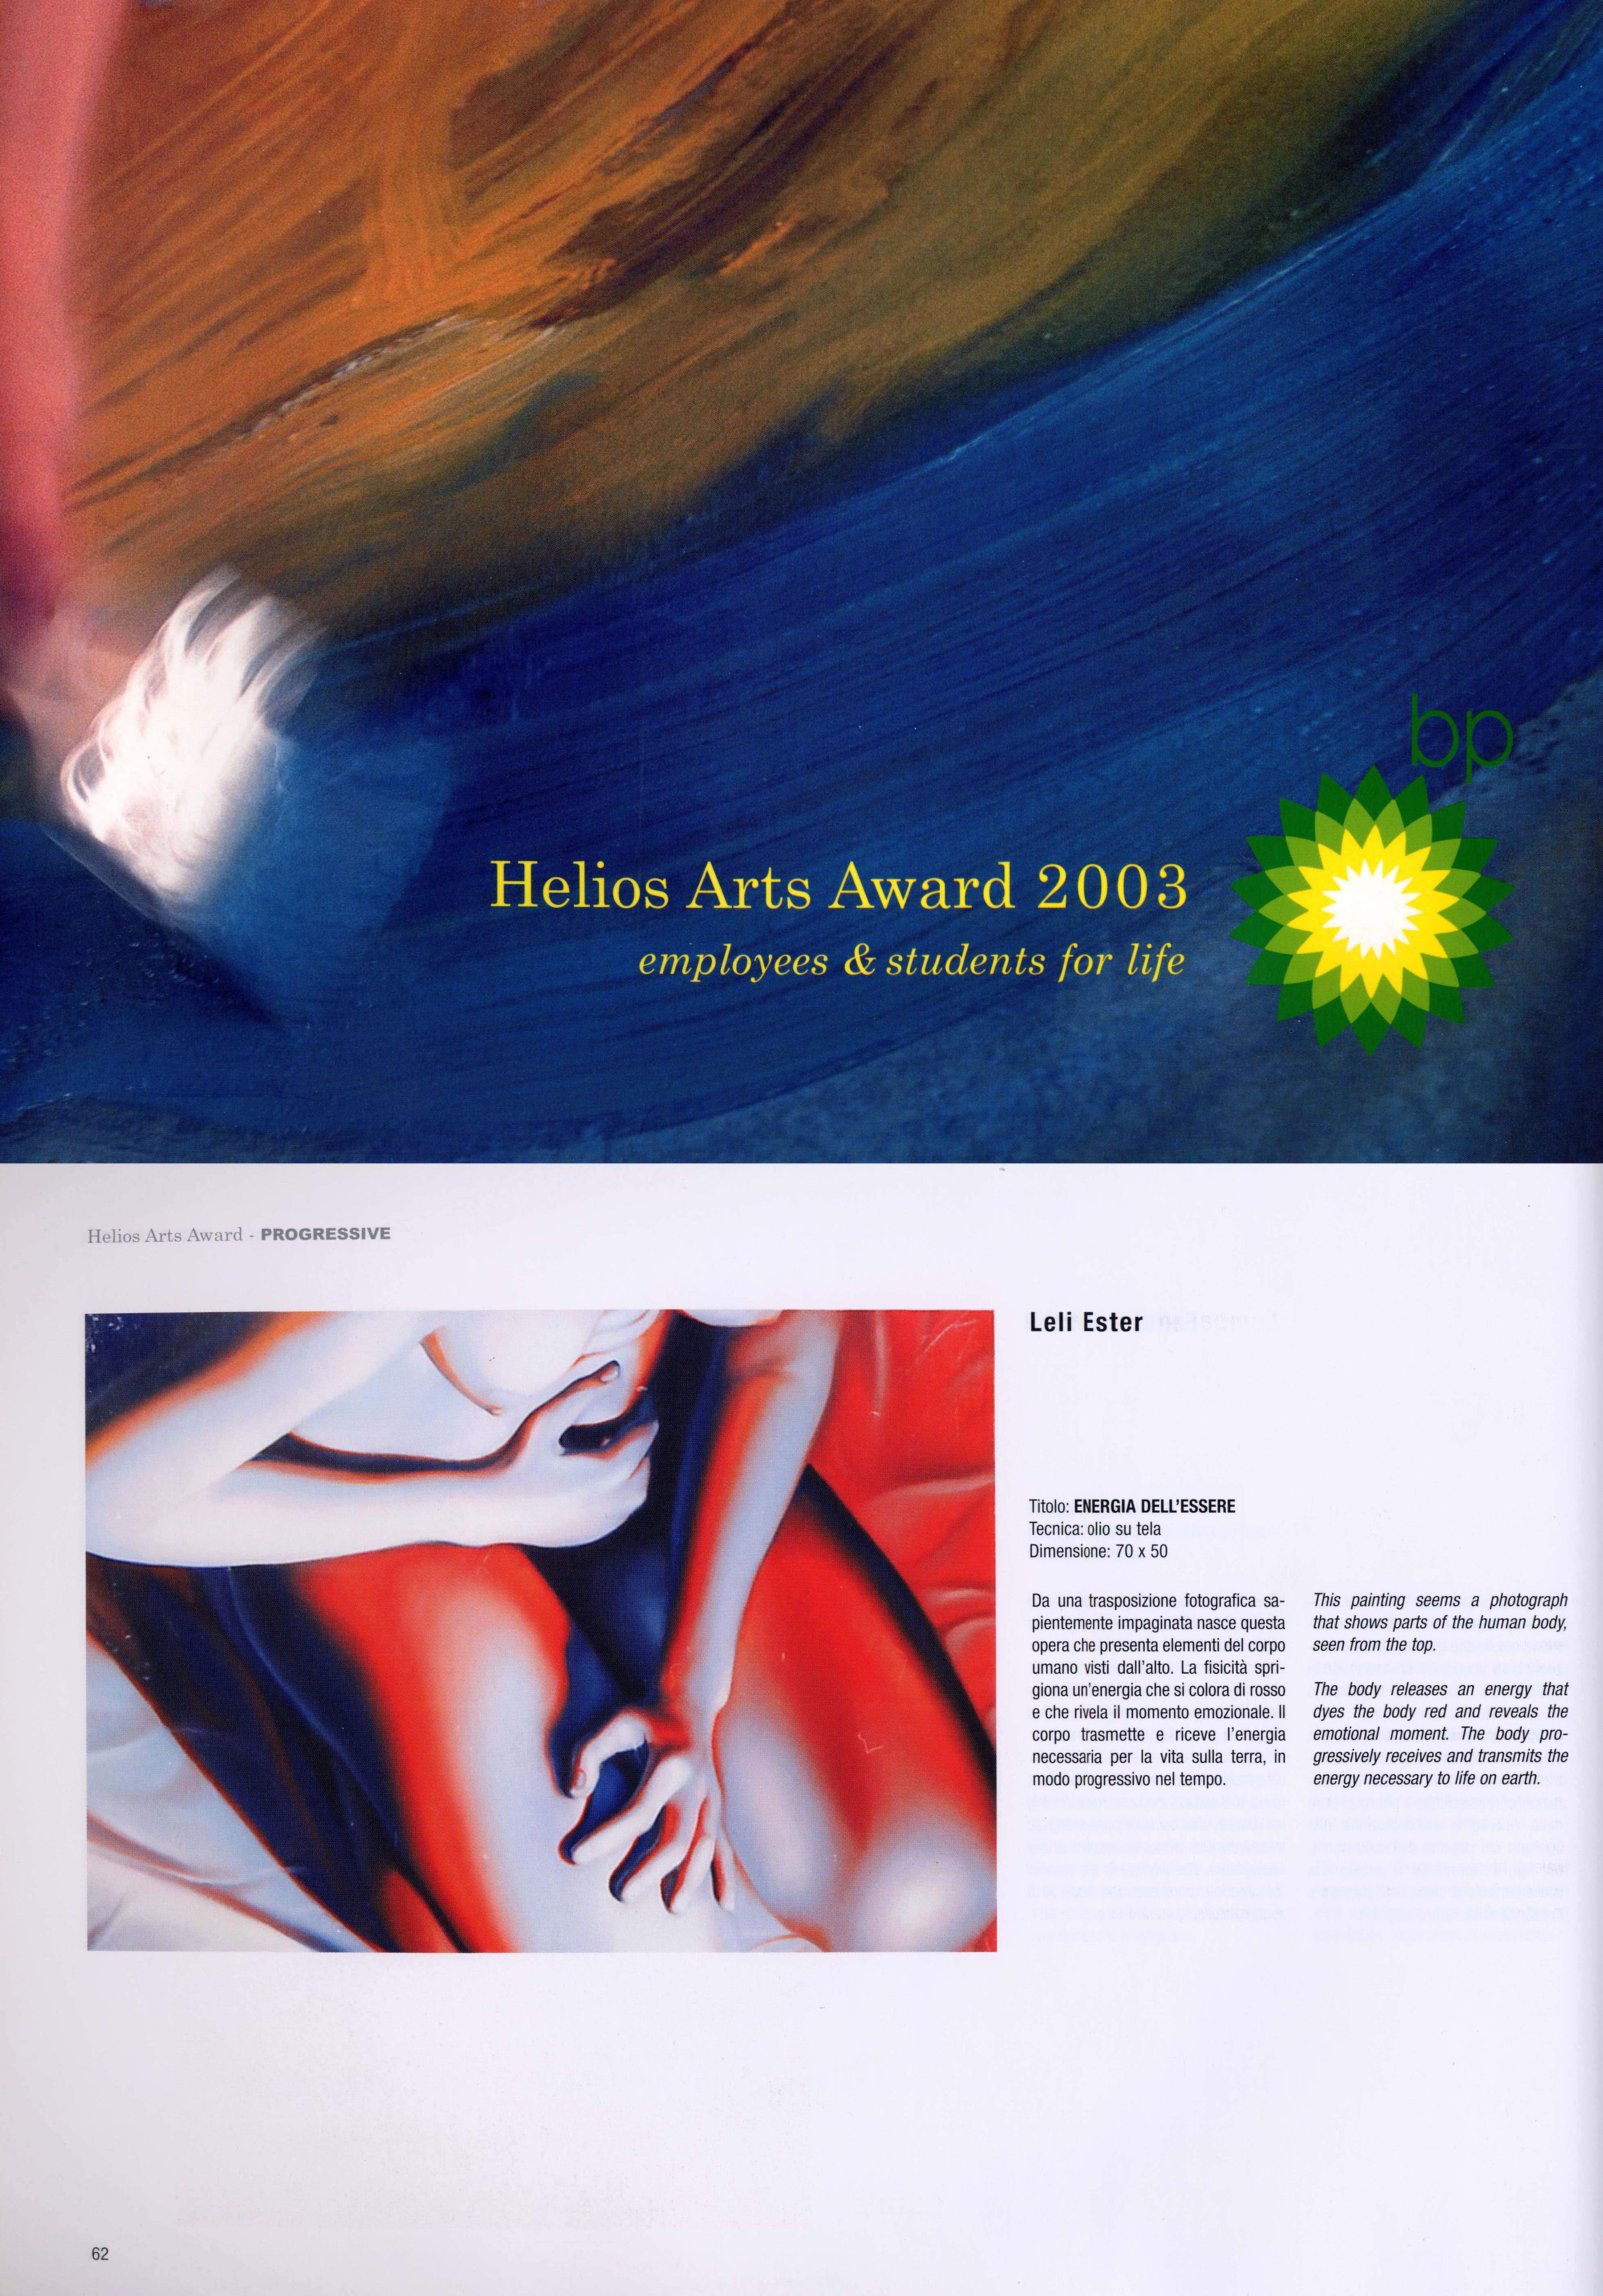 Invitata al Premio dall'Accademia di Belle Arti Brera - Finalista